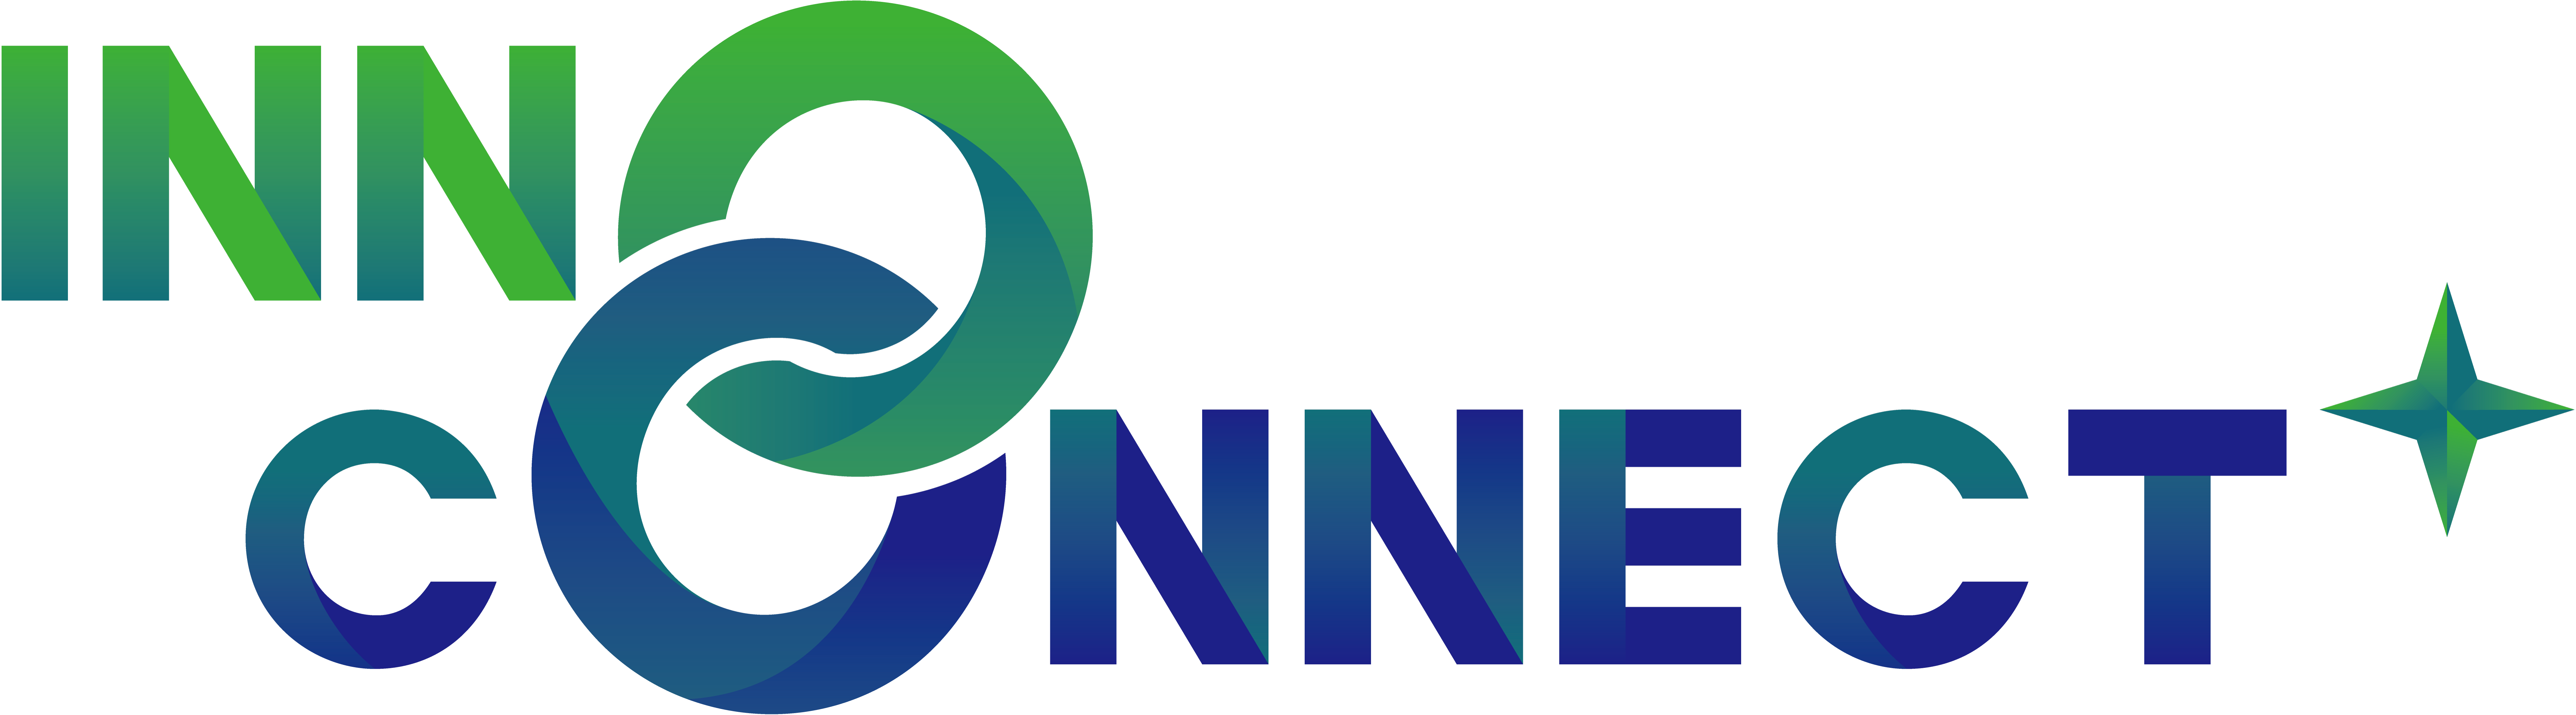 Inno Connect + 全國服務科學跨界共創大賽logo